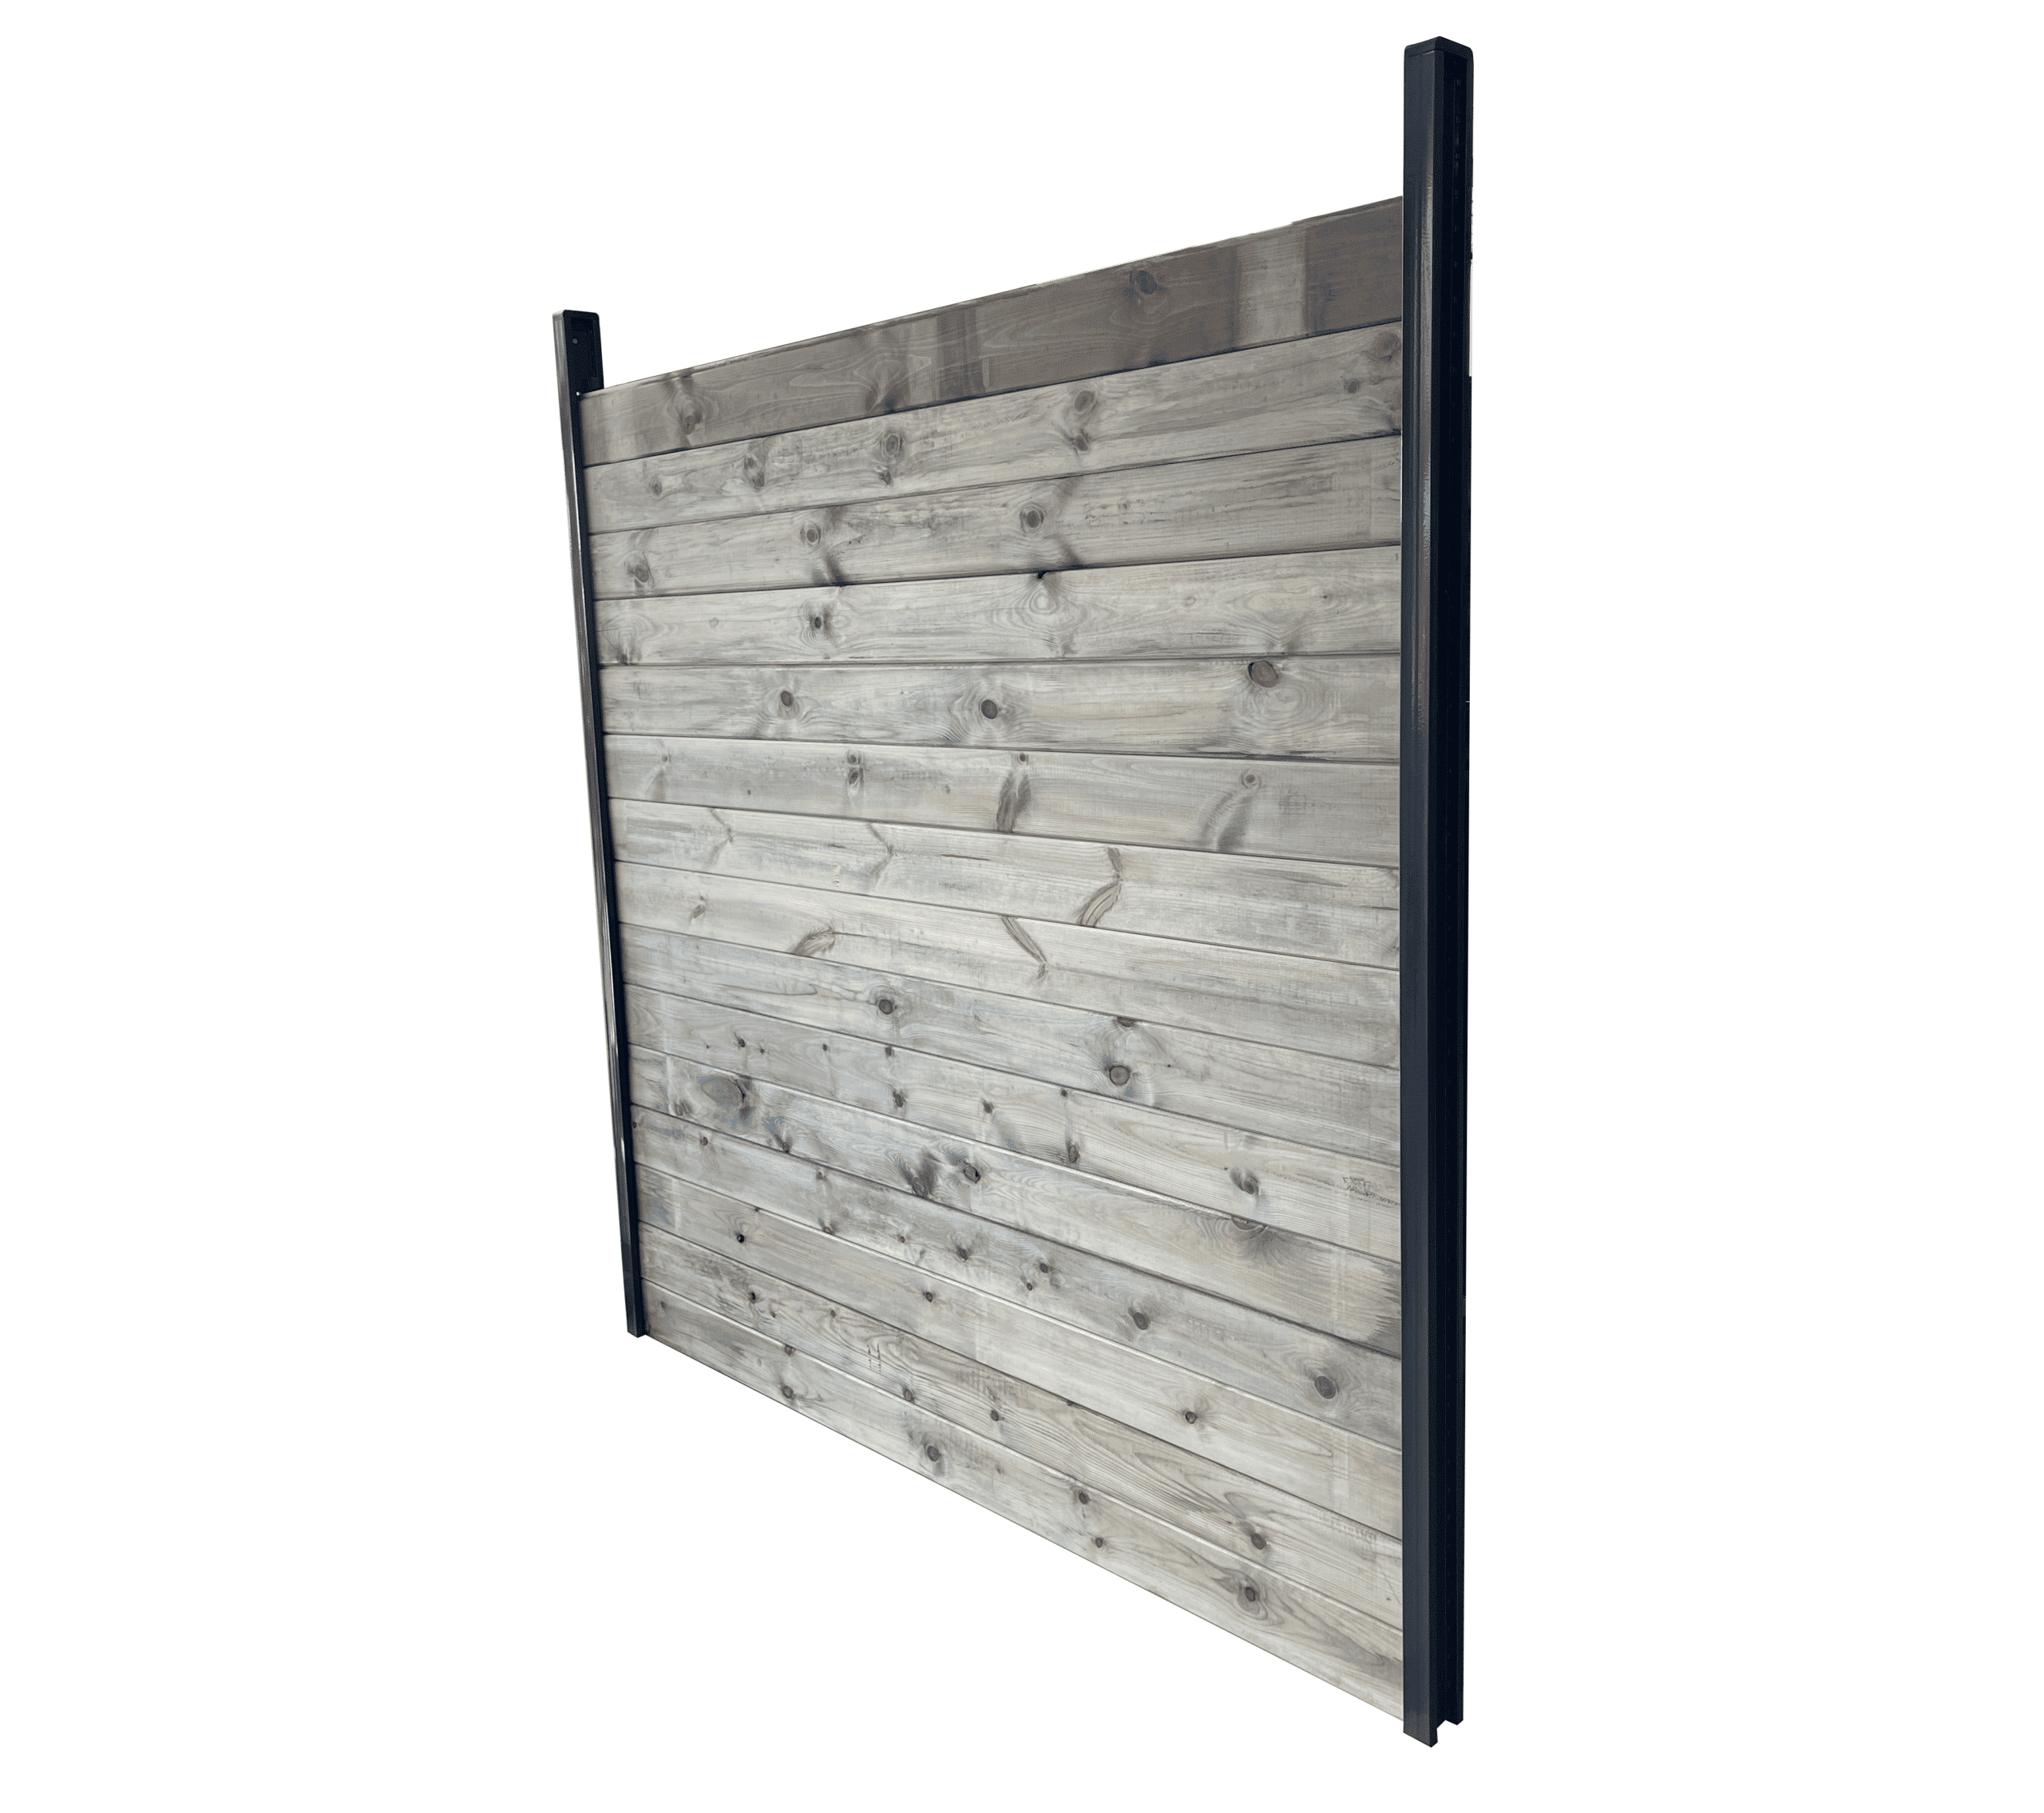 Kit clôture bois massif |40m de longueur|pin sylvestre traité autoclave gris|hauteur : 1,82m|2m entre poteaux